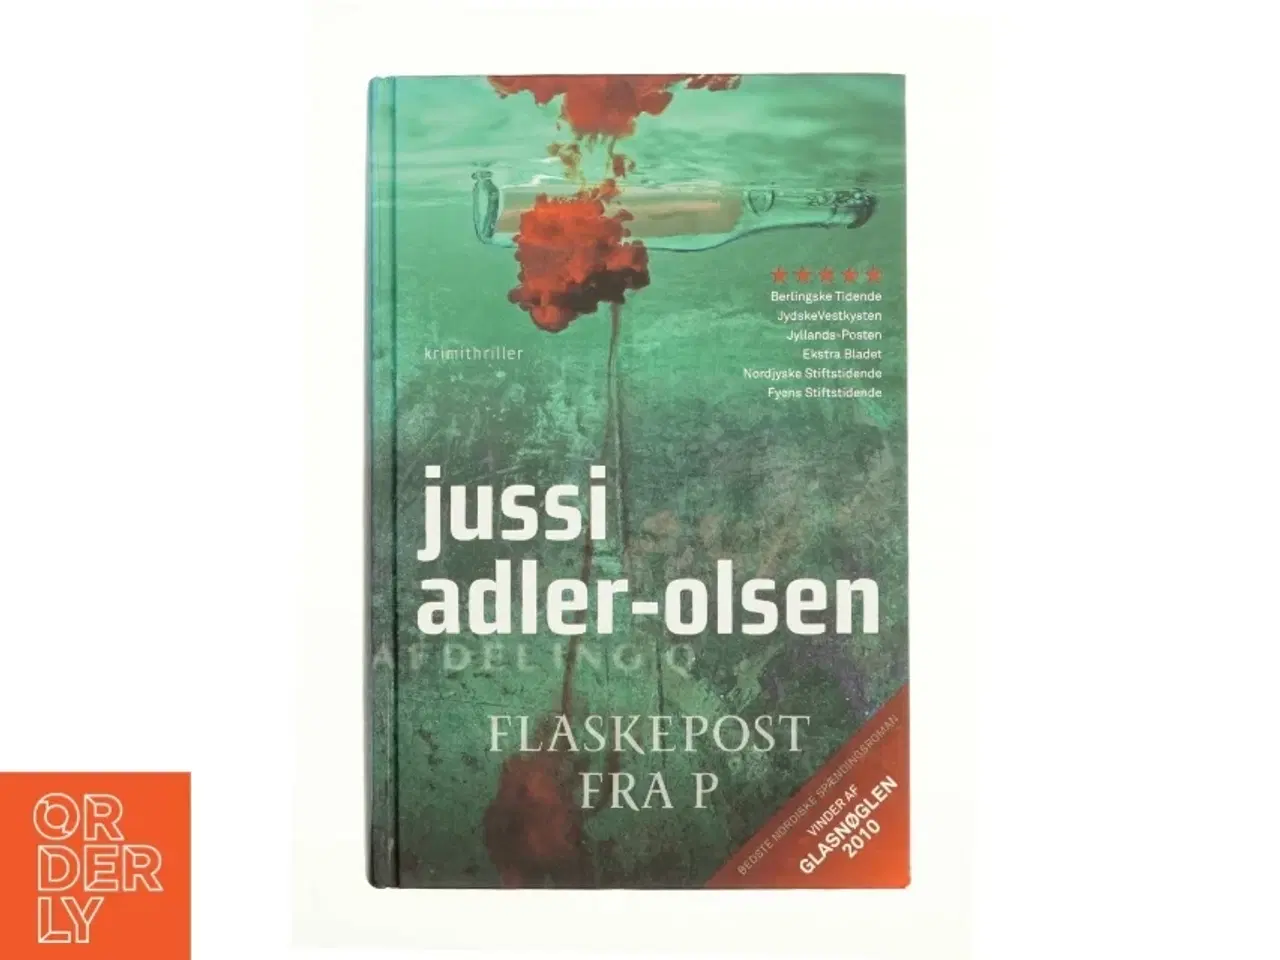 Billede 1 - Flaskepost fra P af Jussi Adler-Olsen, Jussi Adler-Olsen (Bog)